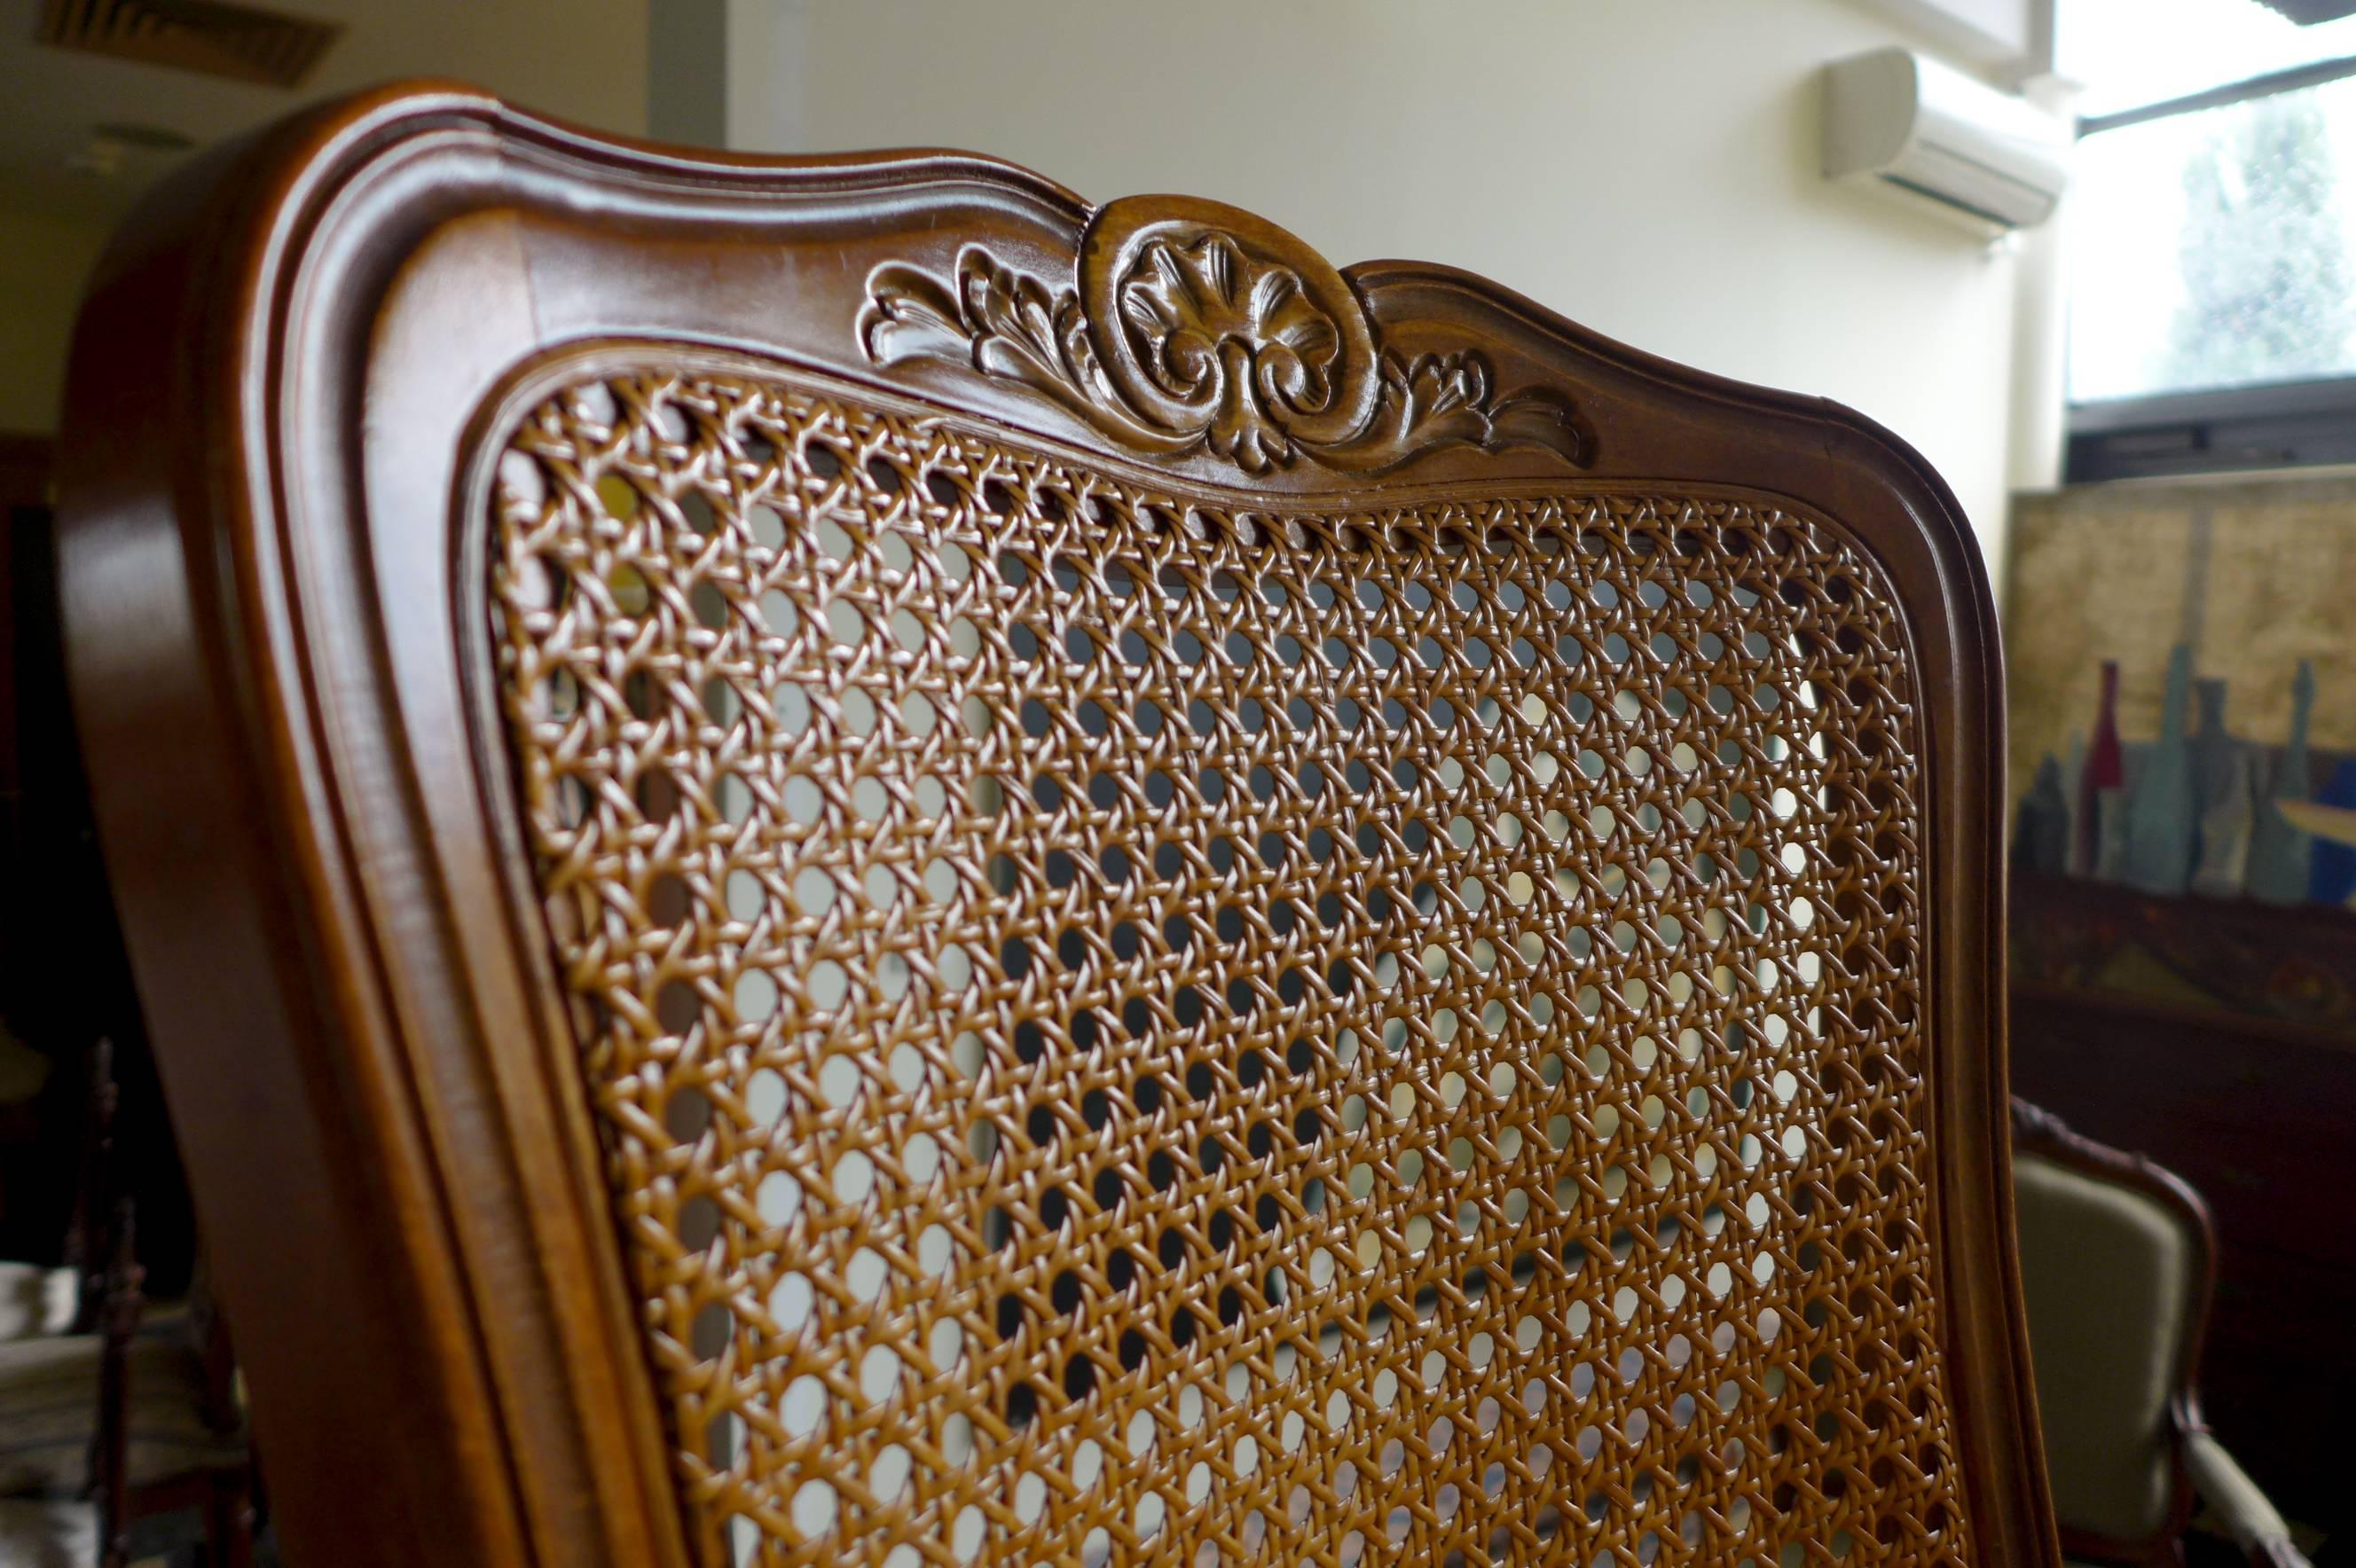 Paire de chaises de salle à manger en noyer sculpté de style Louis XV.
Tous deux avec sièges et dossiers cannelés à la main. Les chaises reposent sur des pieds cabriole avant élégamment sculptés et peuvent être vendues séparément.
France, vers